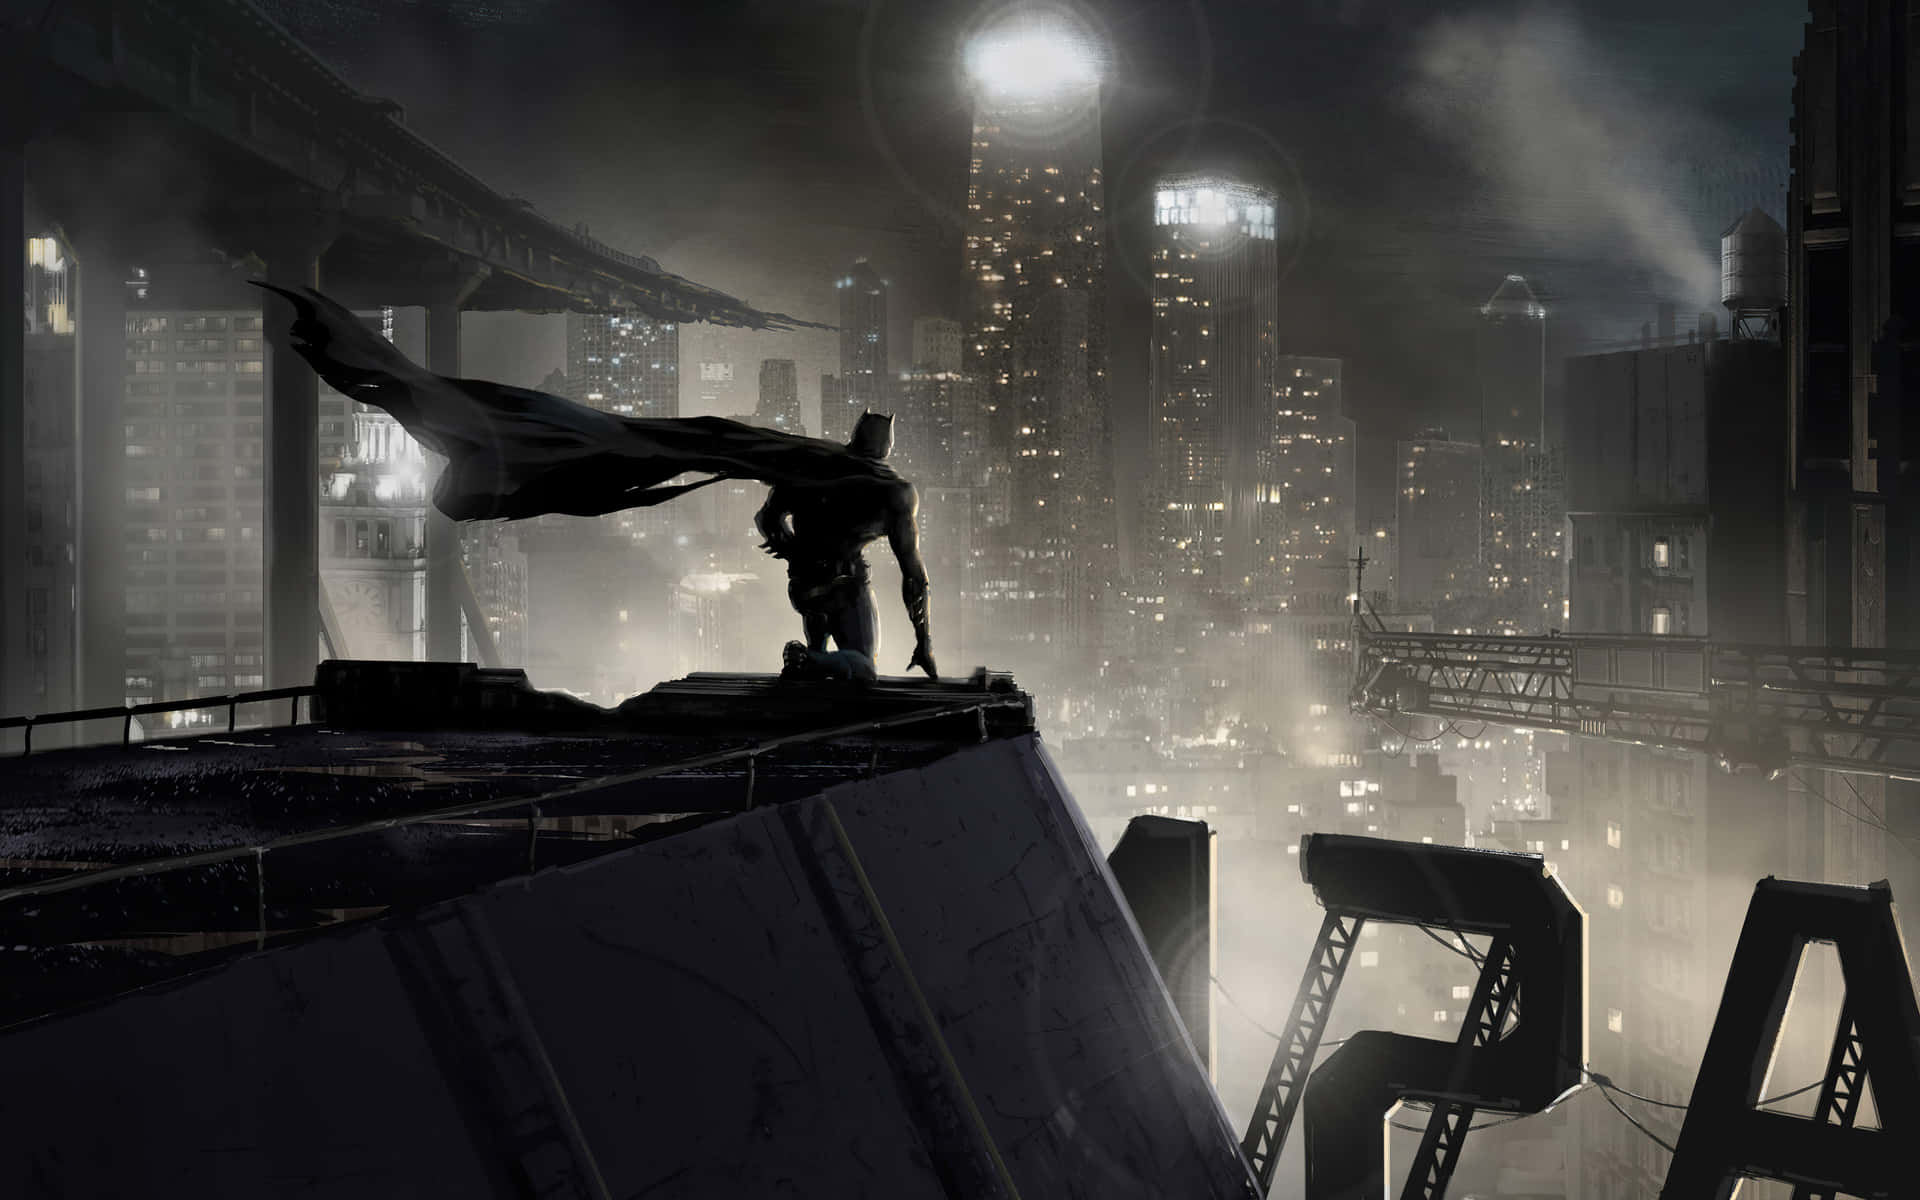 Sökinte Längre Än Batman City För Imponerande Arkitektonisk Skönhet. Wallpaper